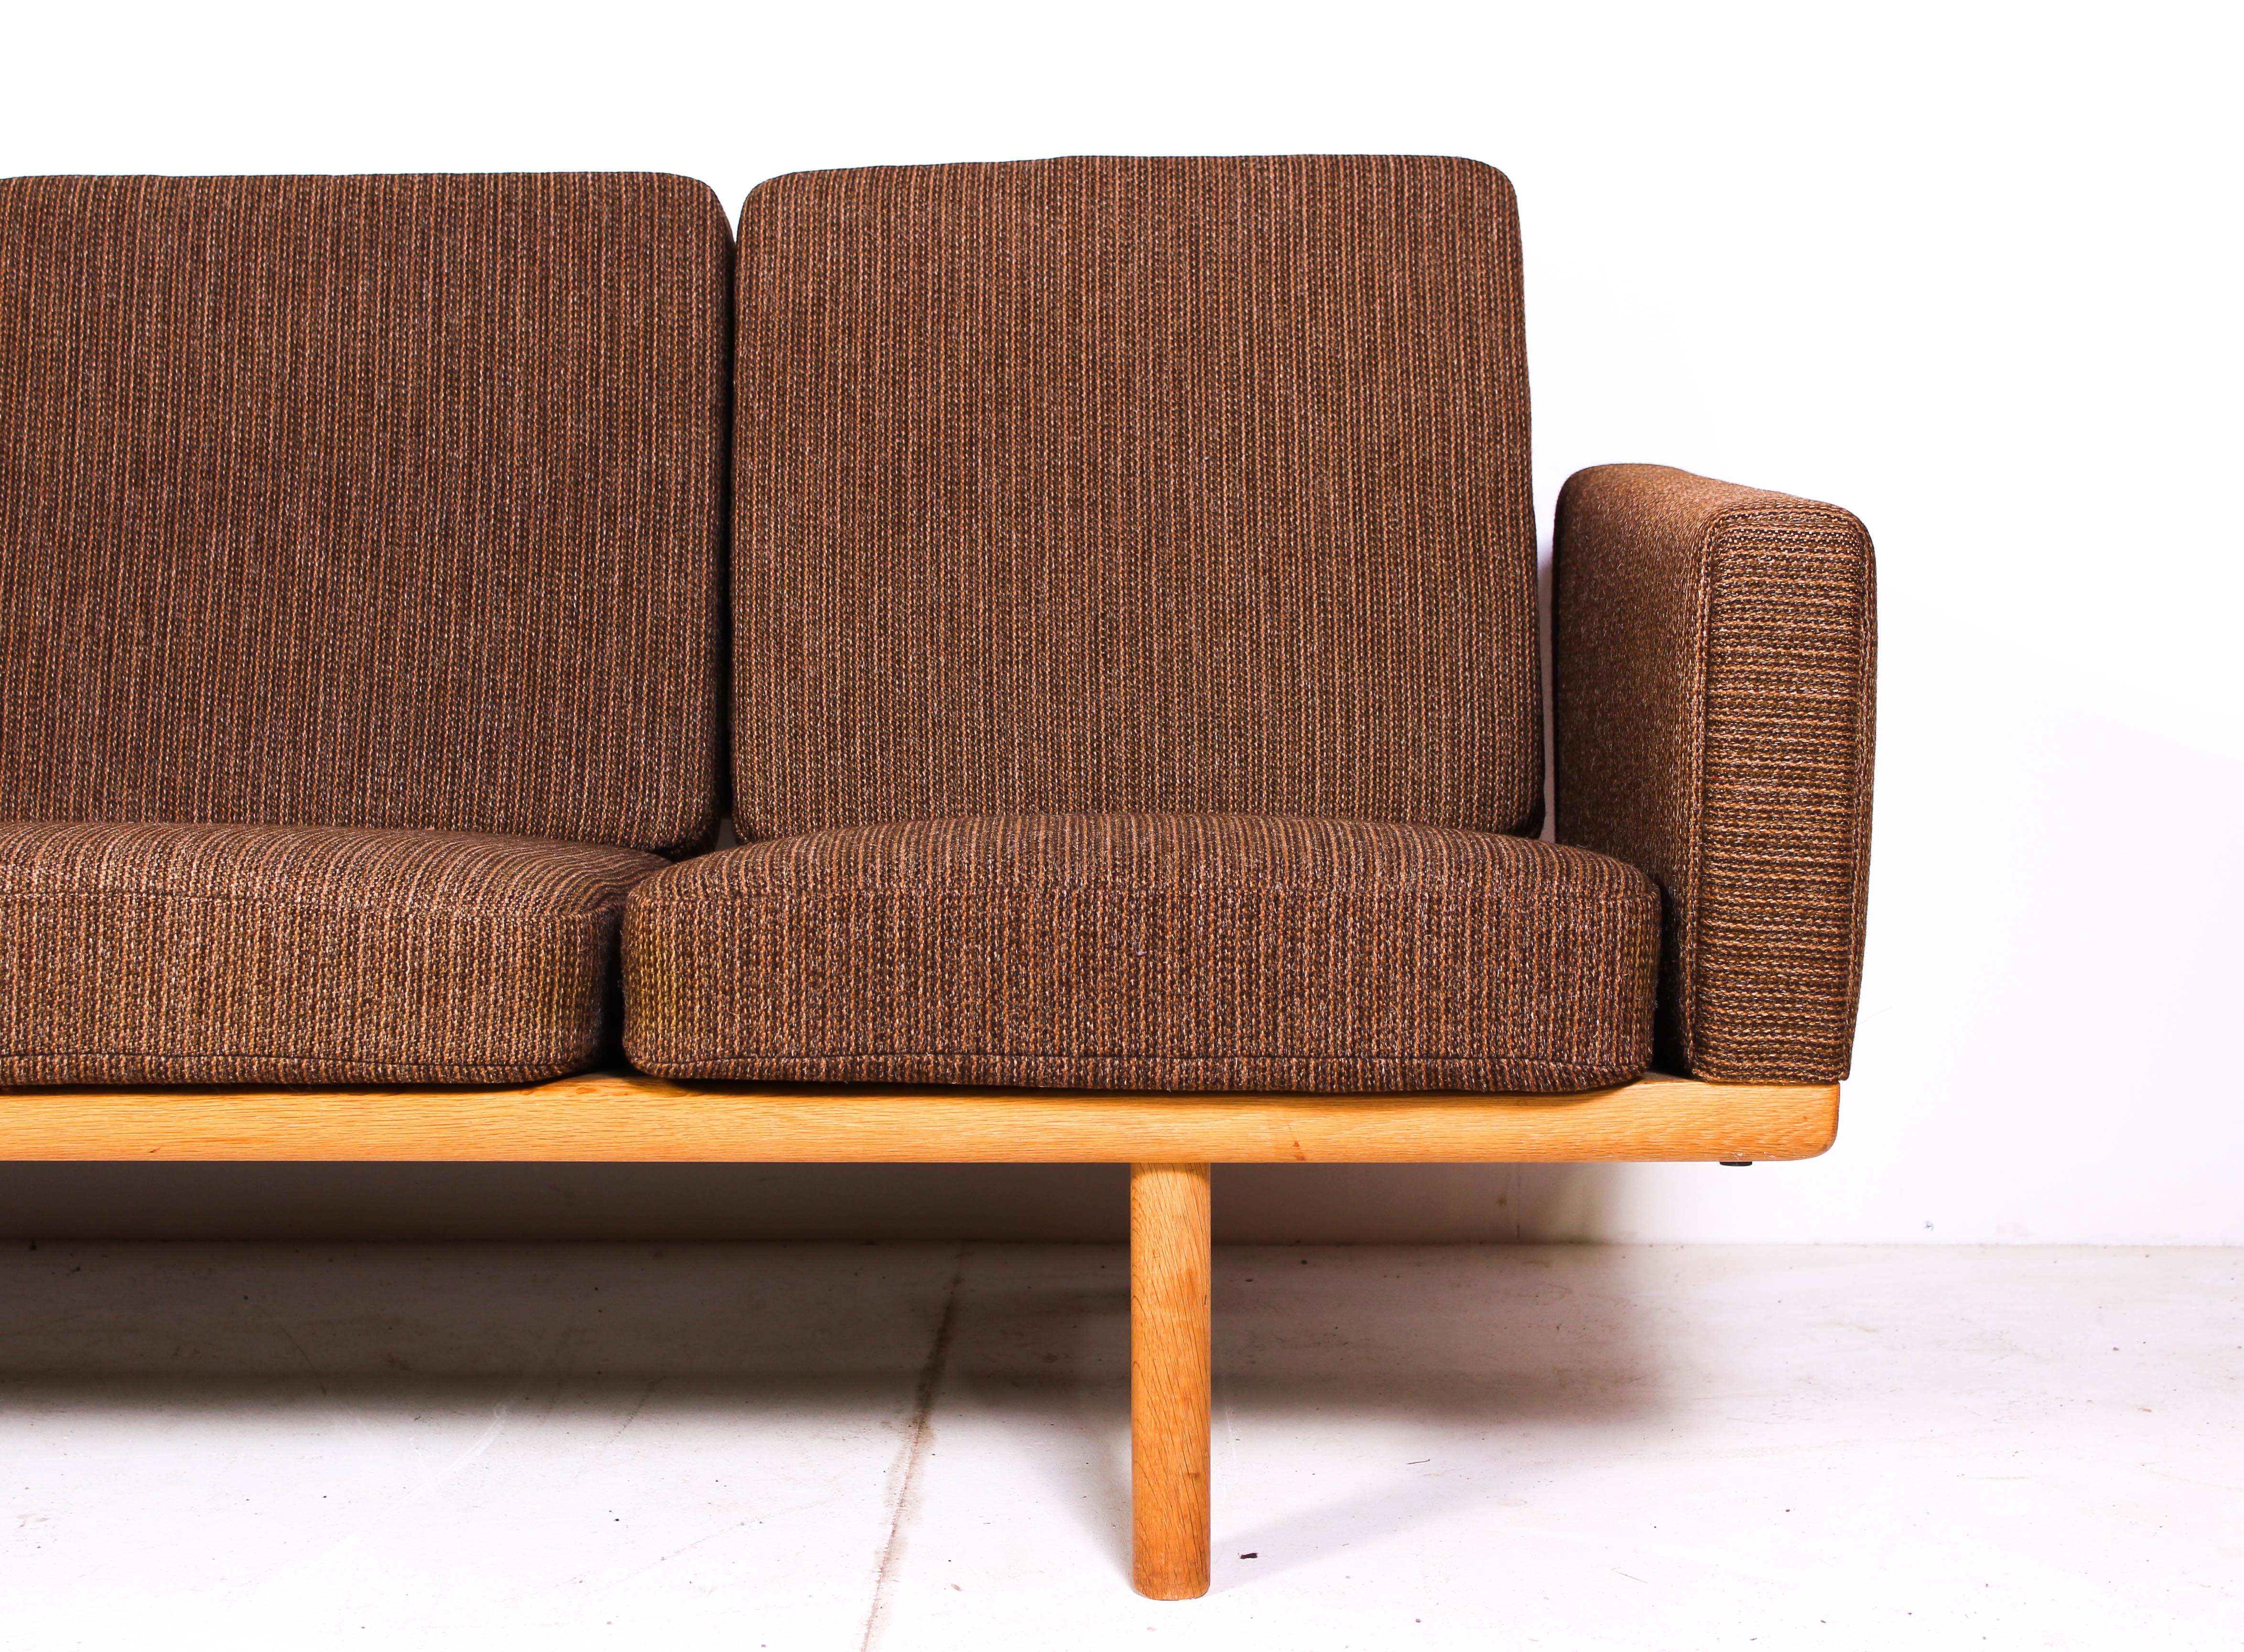 Danish Midcentury Hans J Wegner GE-236/4 Oak Sofa by GETAMA For Sale